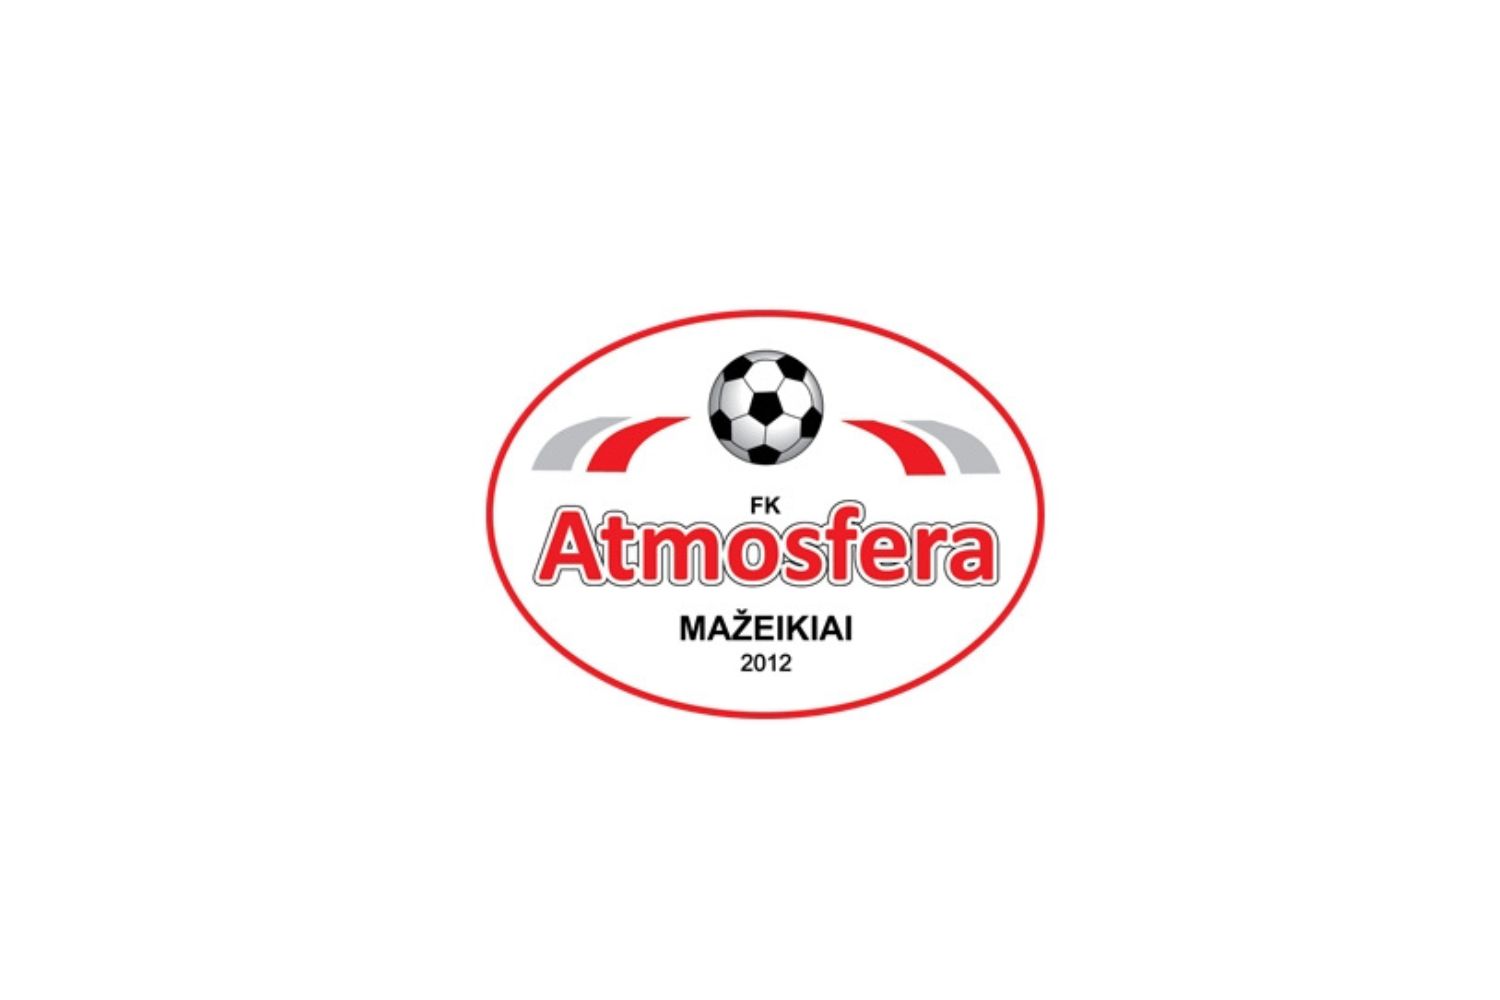 fk-atmosfera-mazeikiai-13-football-club-facts